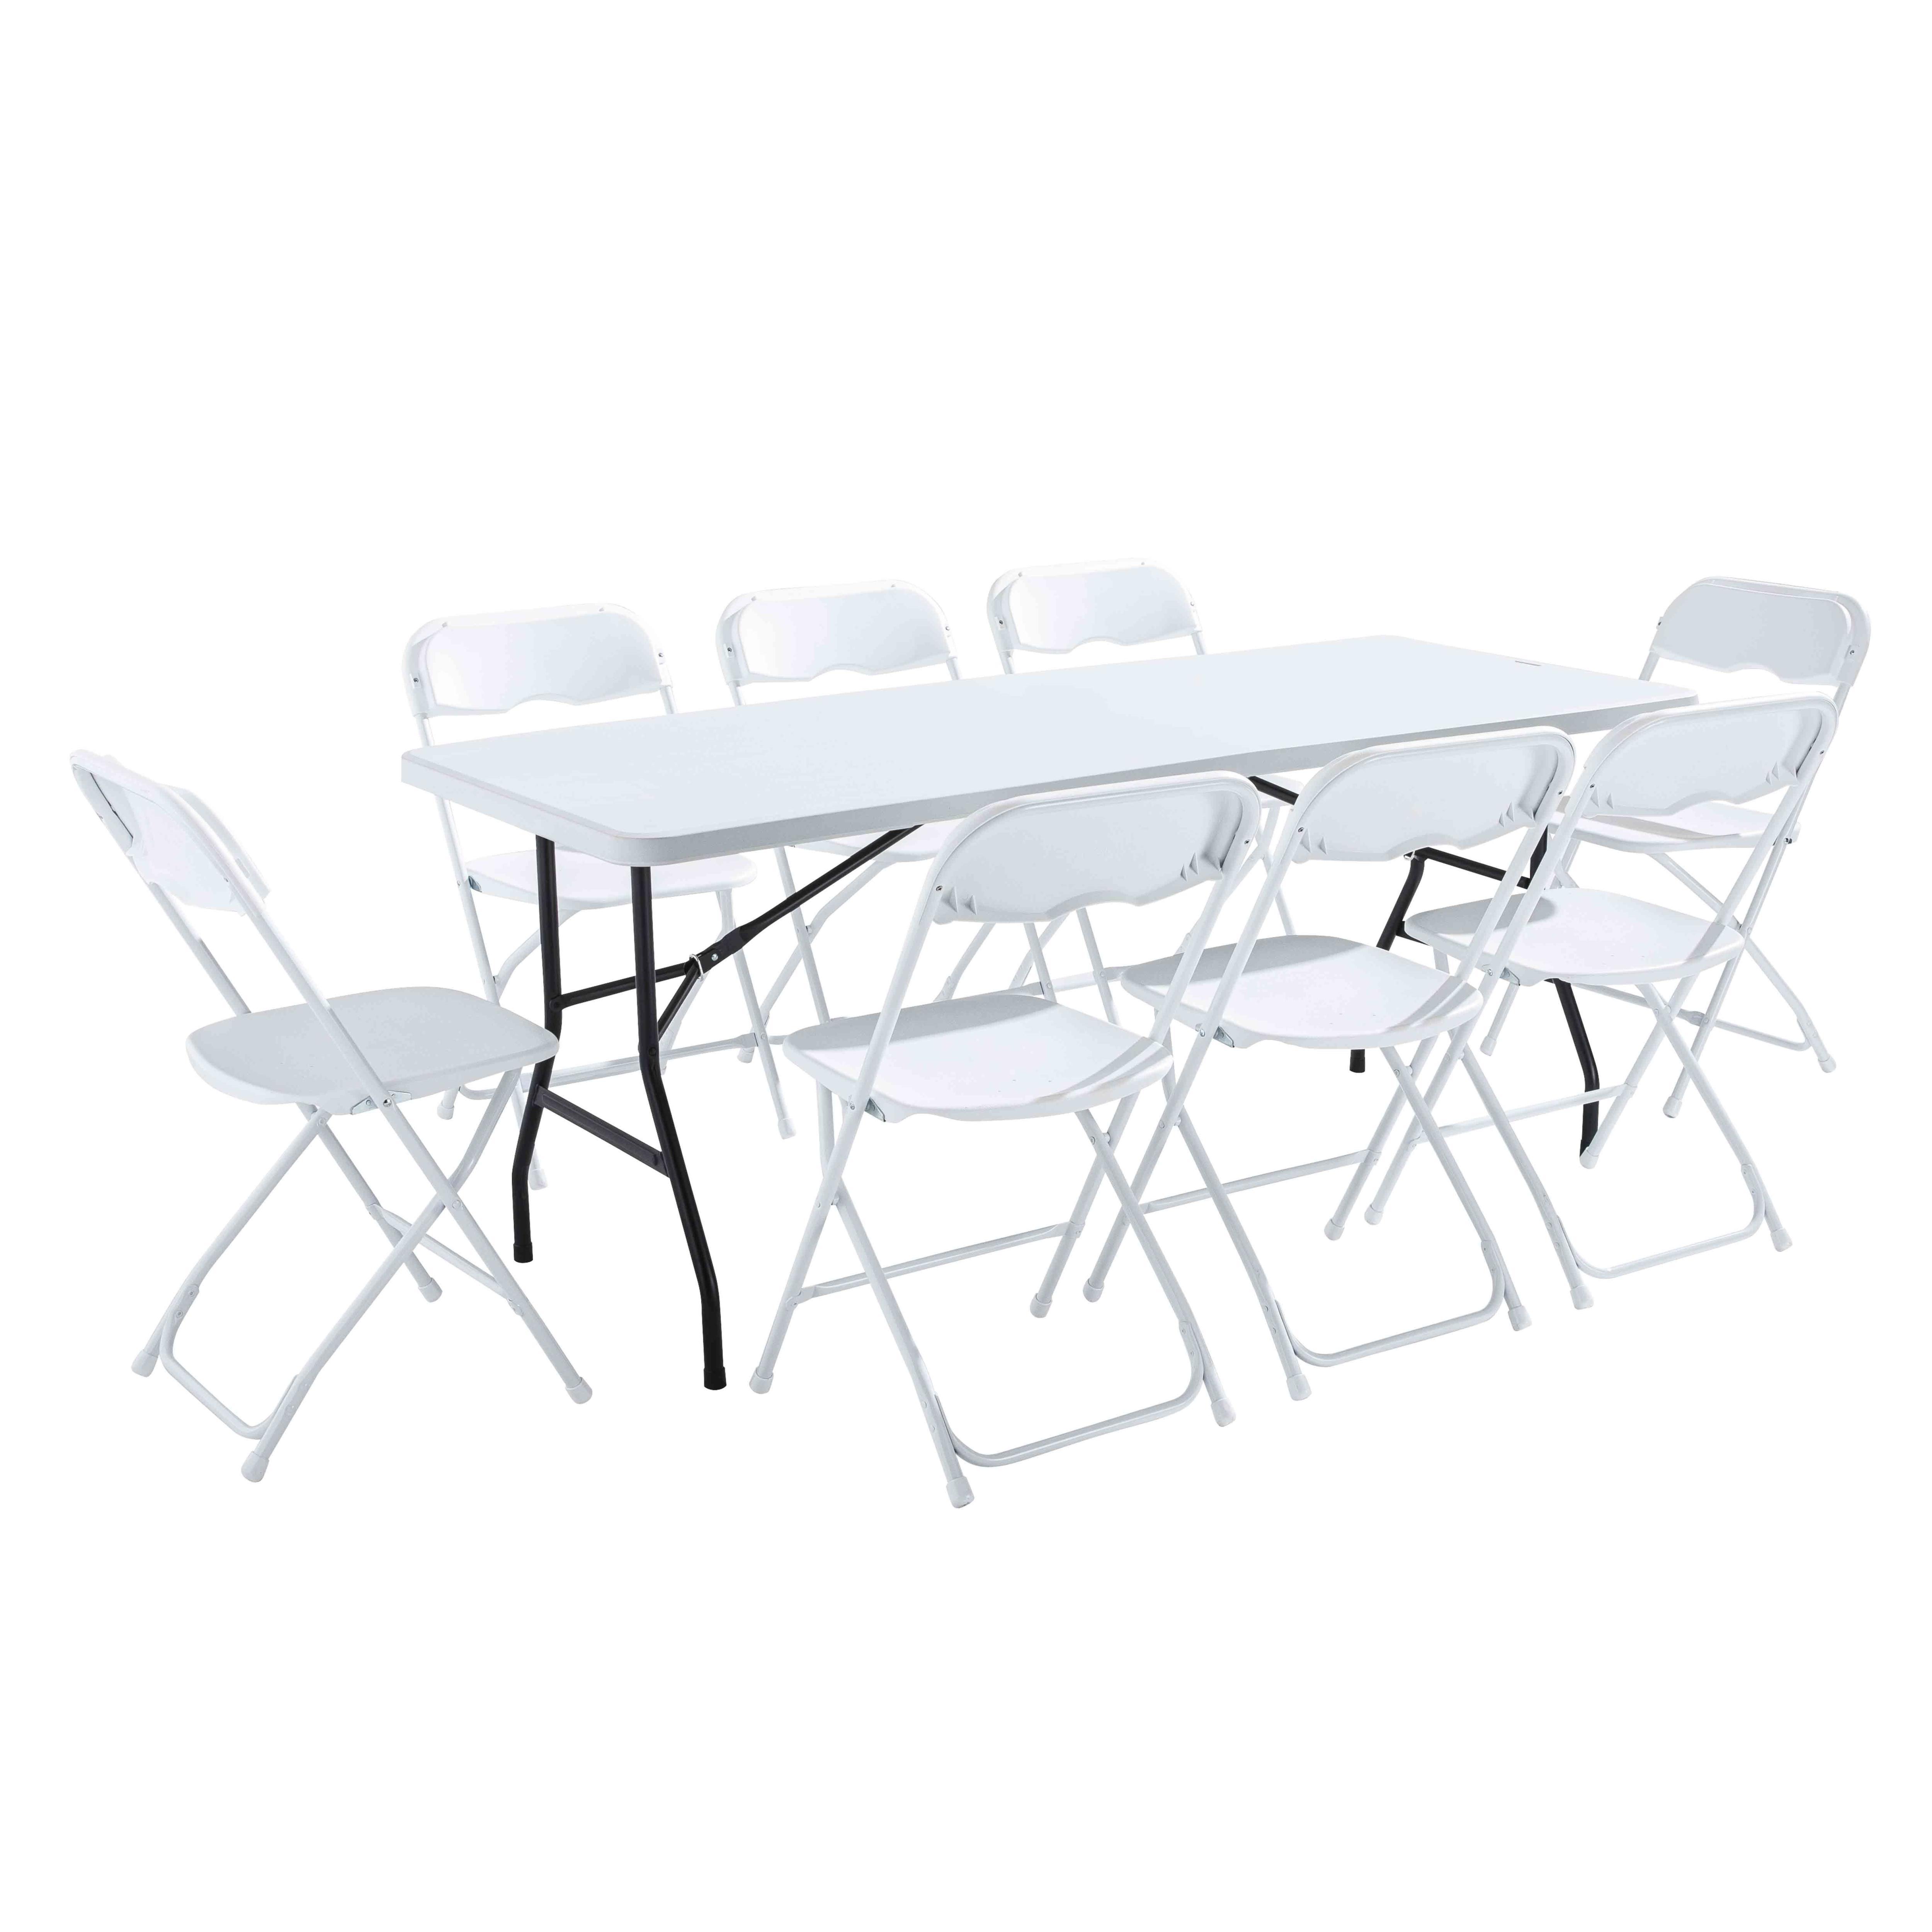 Mesa plegable de 180 cm auxiliar rectangular blanca – Mesa de camping para  8 personas, 180 x